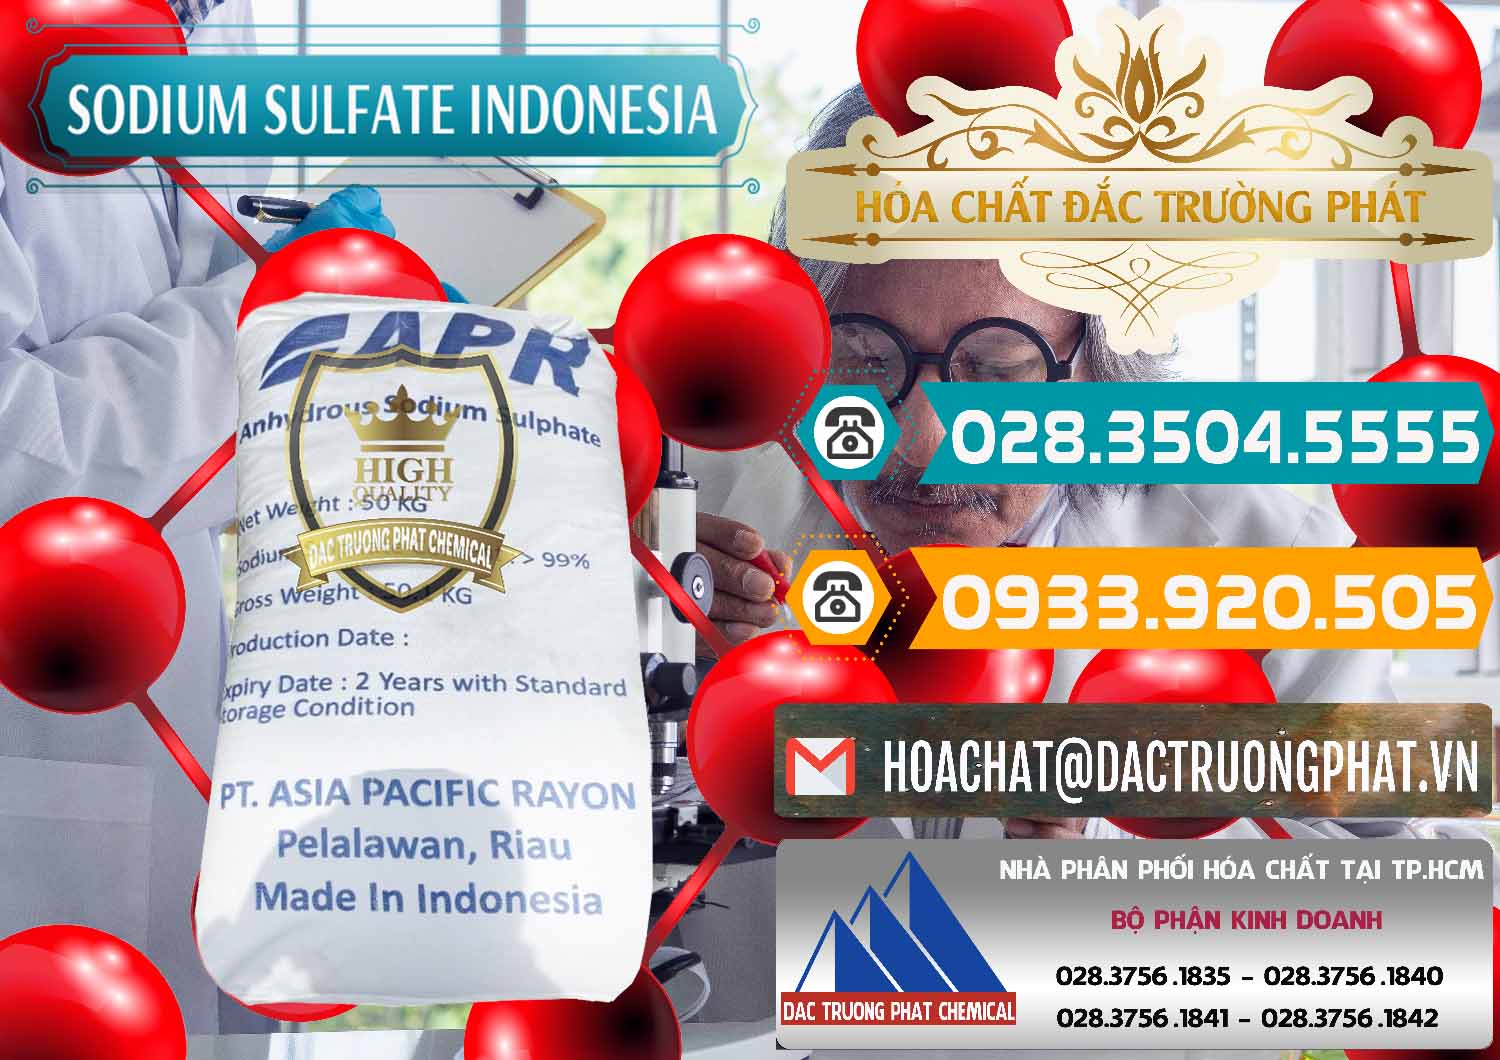 Cty chuyên bán và phân phối Sodium Sulphate - Muối Sunfat Na2SO4 APR Indonesia - 0460 - Đơn vị cung cấp ( nhập khẩu ) hóa chất tại TP.HCM - congtyhoachat.vn